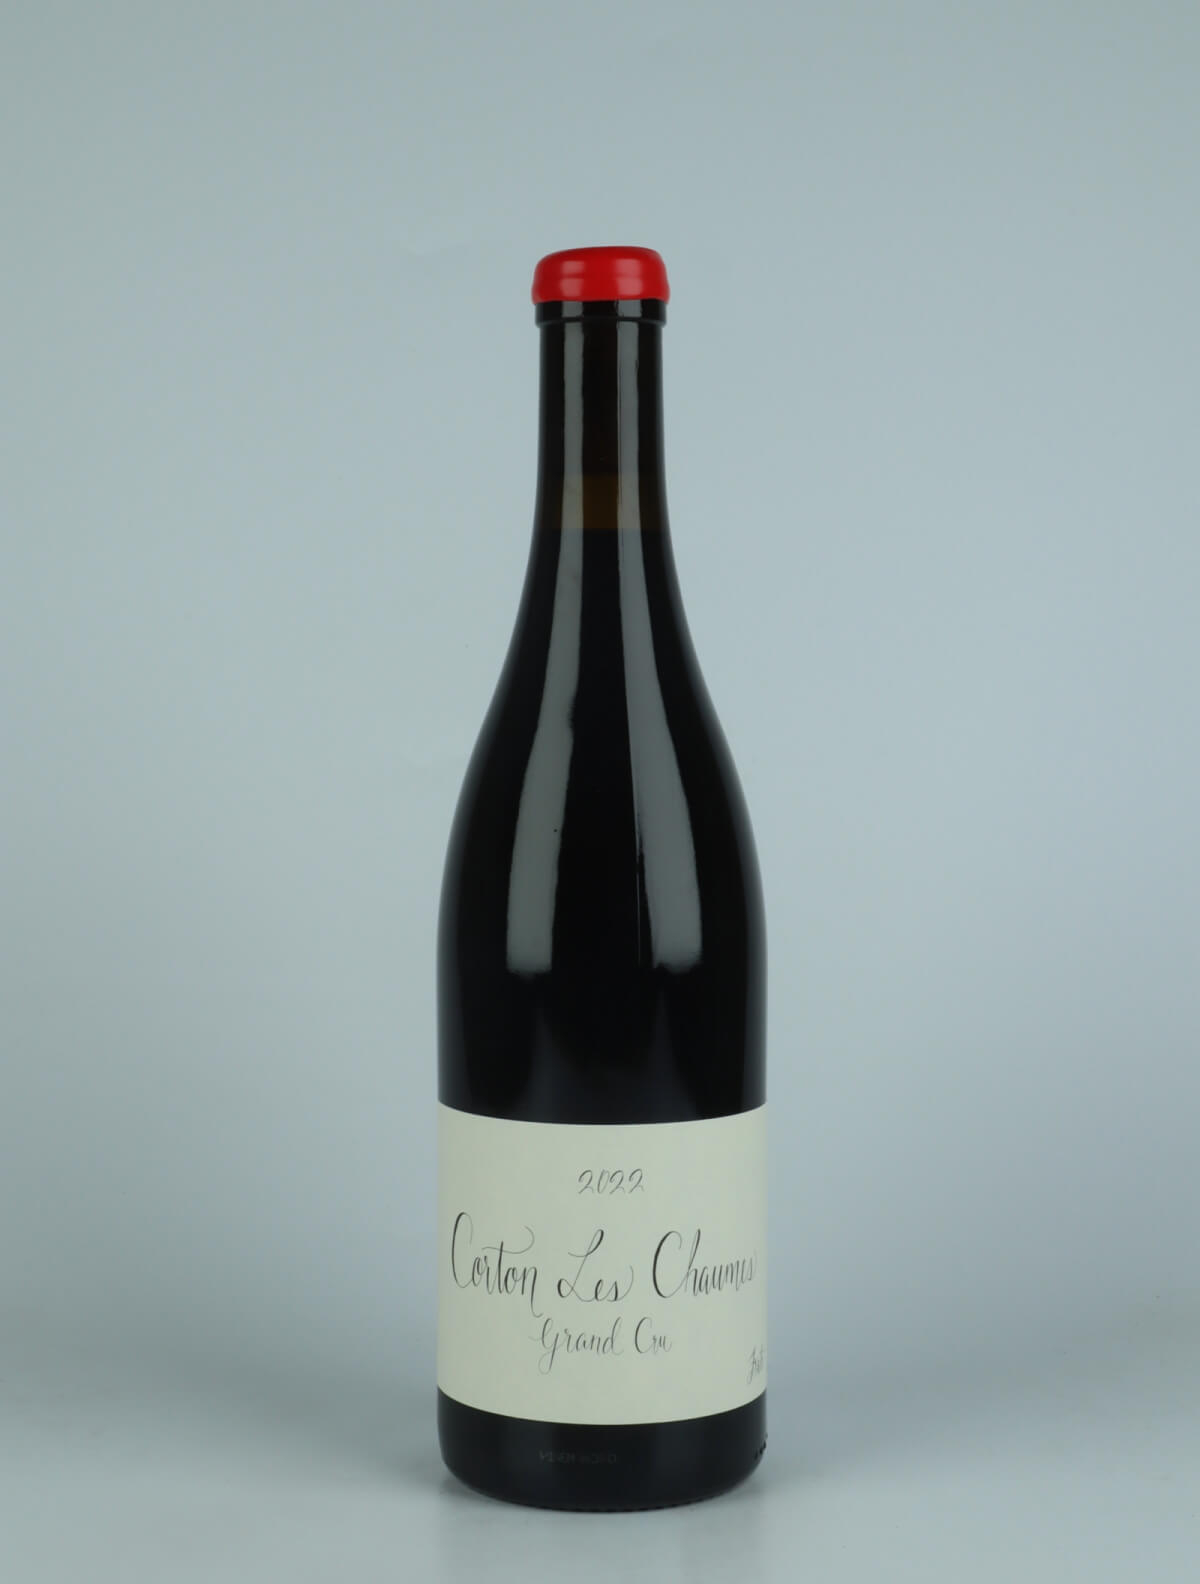 En flaske 2022 Corton Les Chaumes - Grand Cru Rødvin fra Fraté, Bourgogne i Frankrig